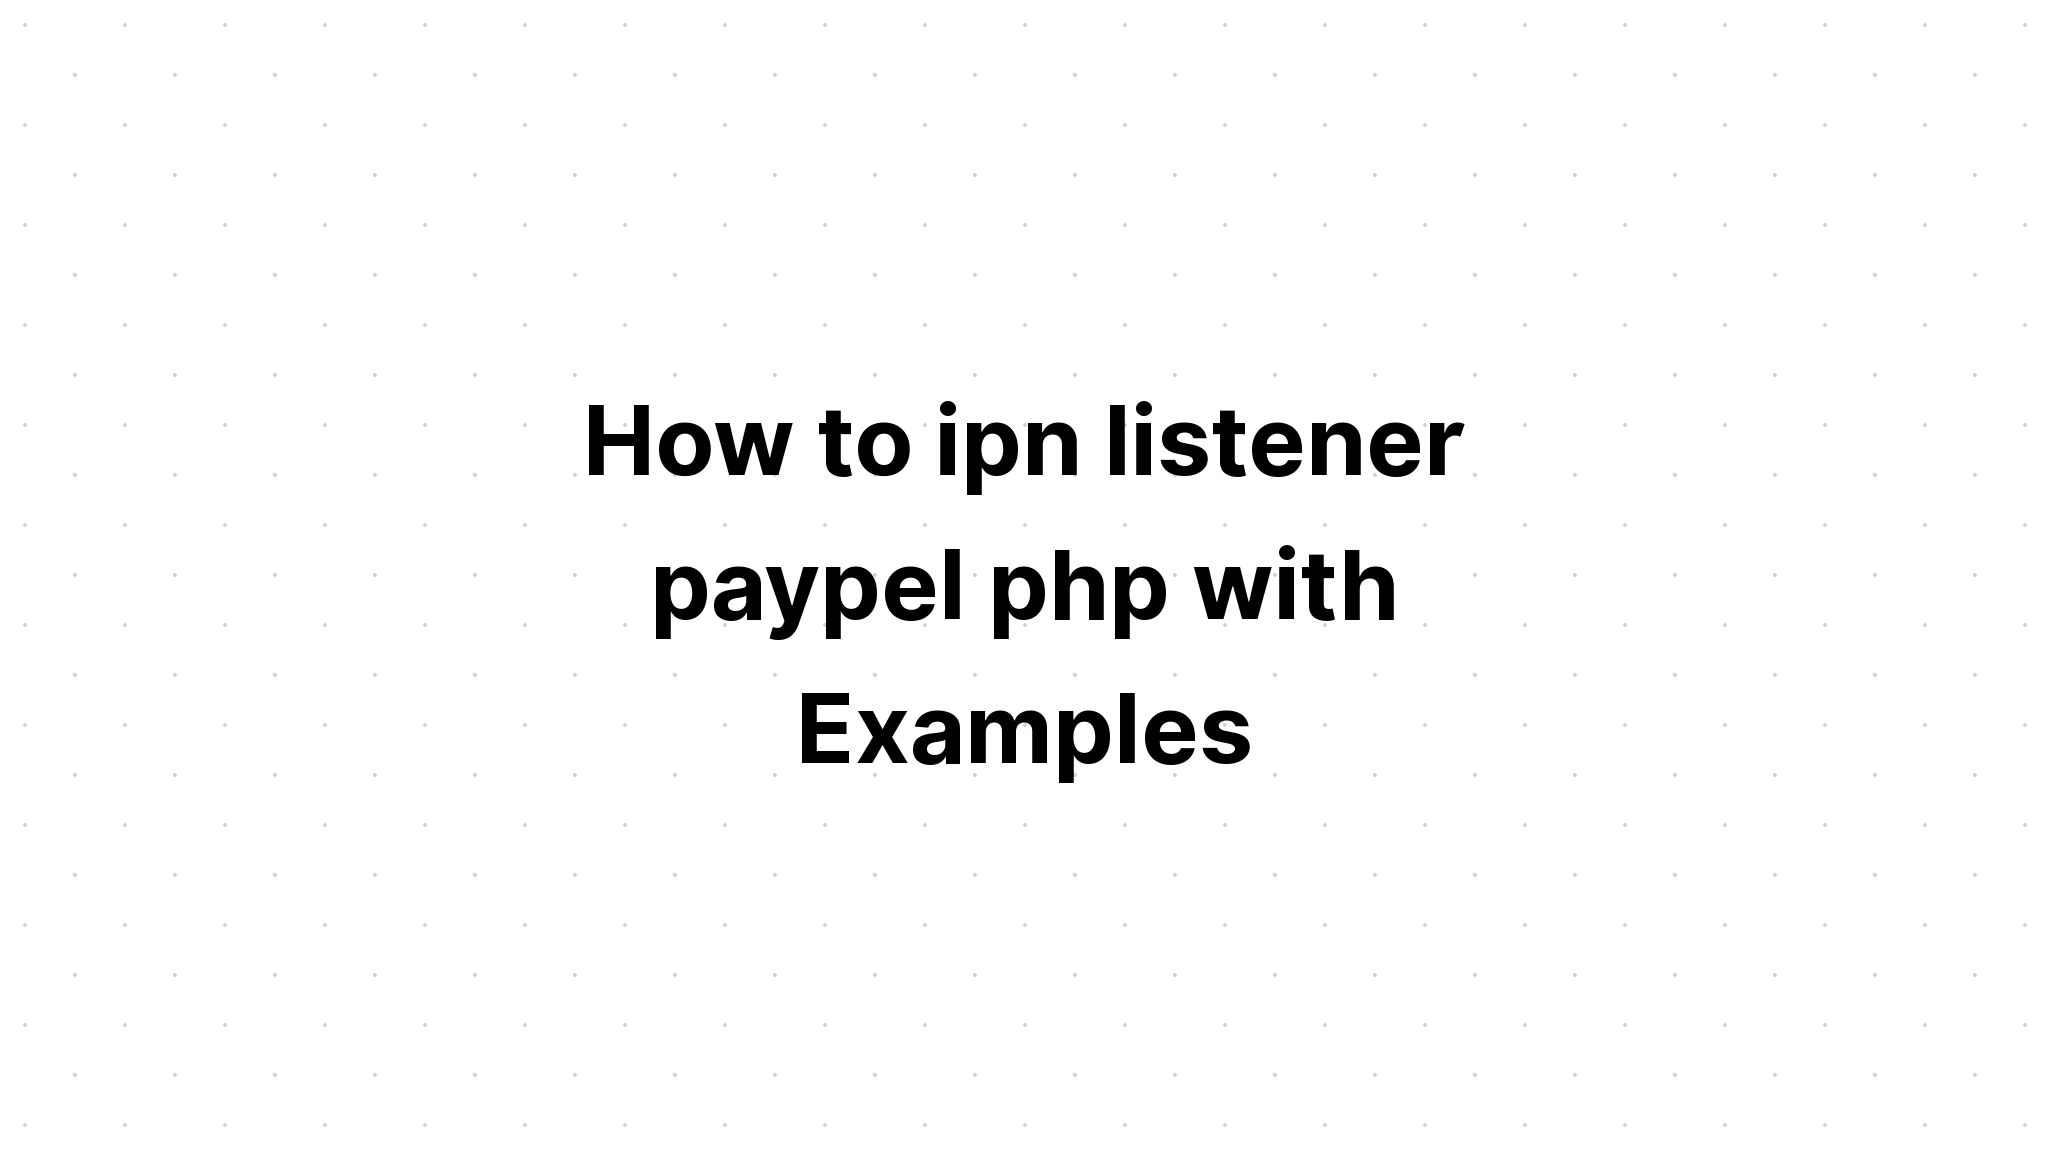 Cách ipn người nghe paypel php với các ví dụ